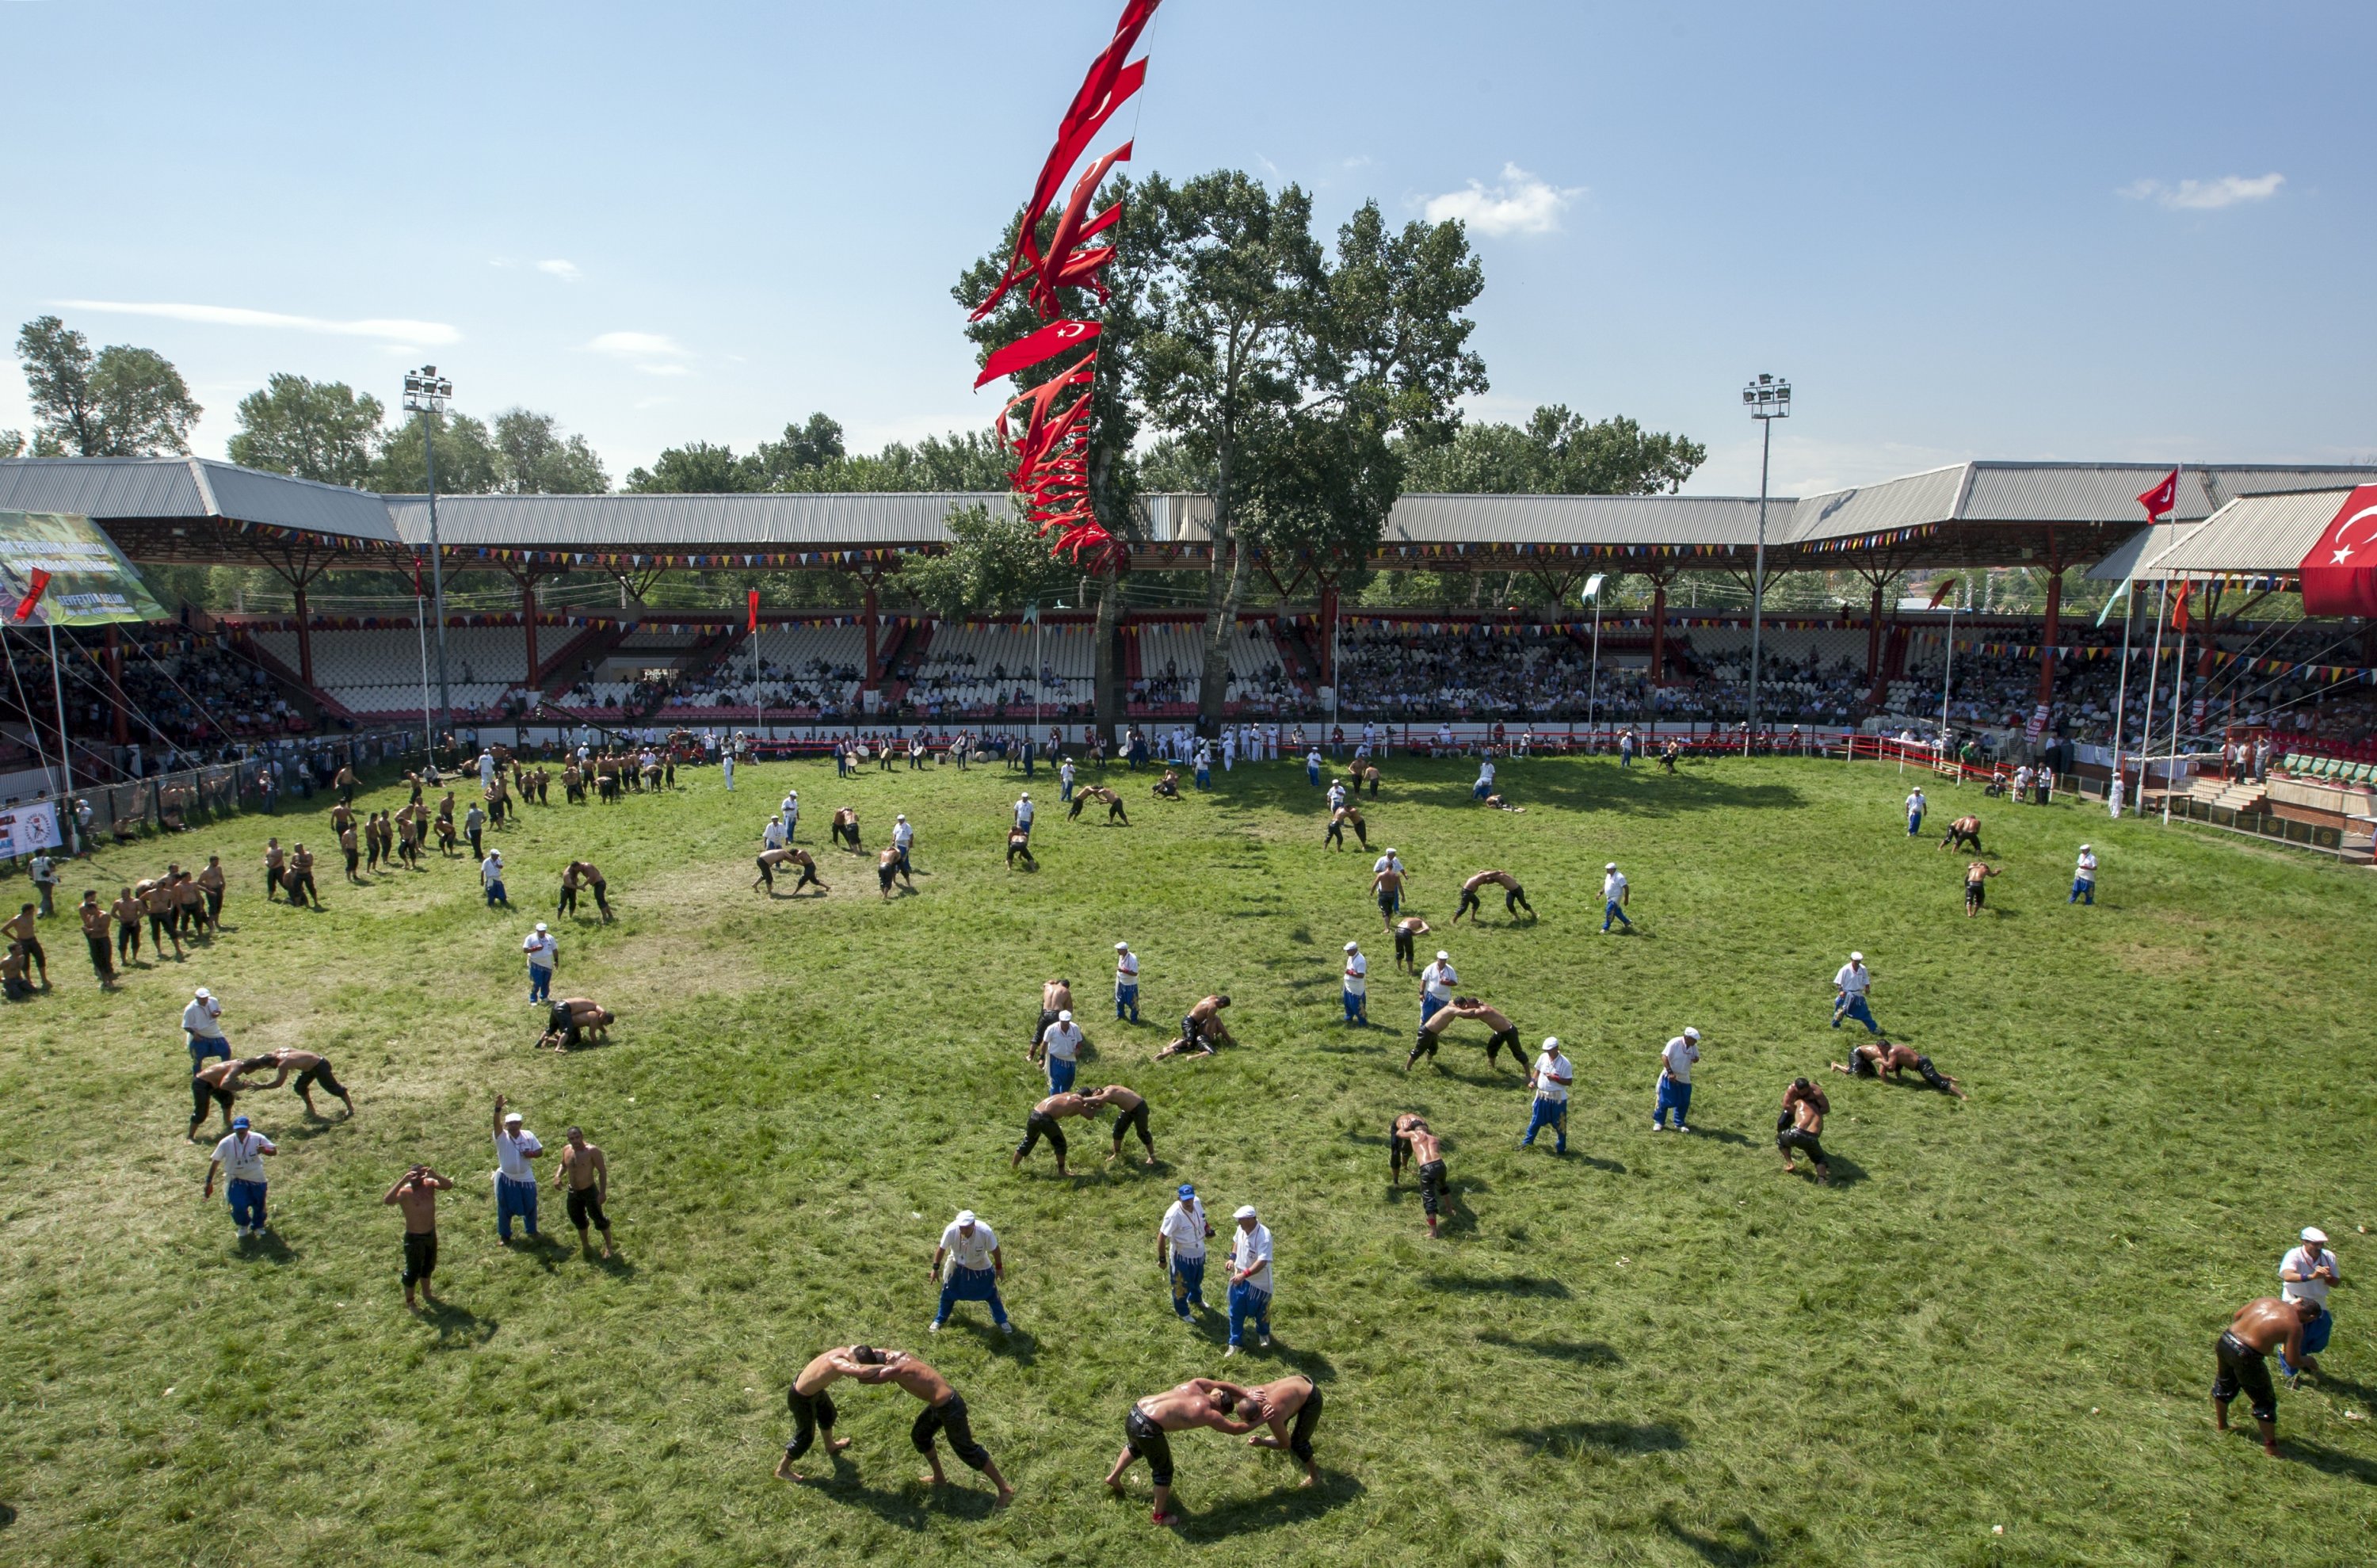 Wrestlers fill the arena at the Kırkpınar Oil Wrestling Festival in Edirne, Turkey. (Shutterstock Photo)